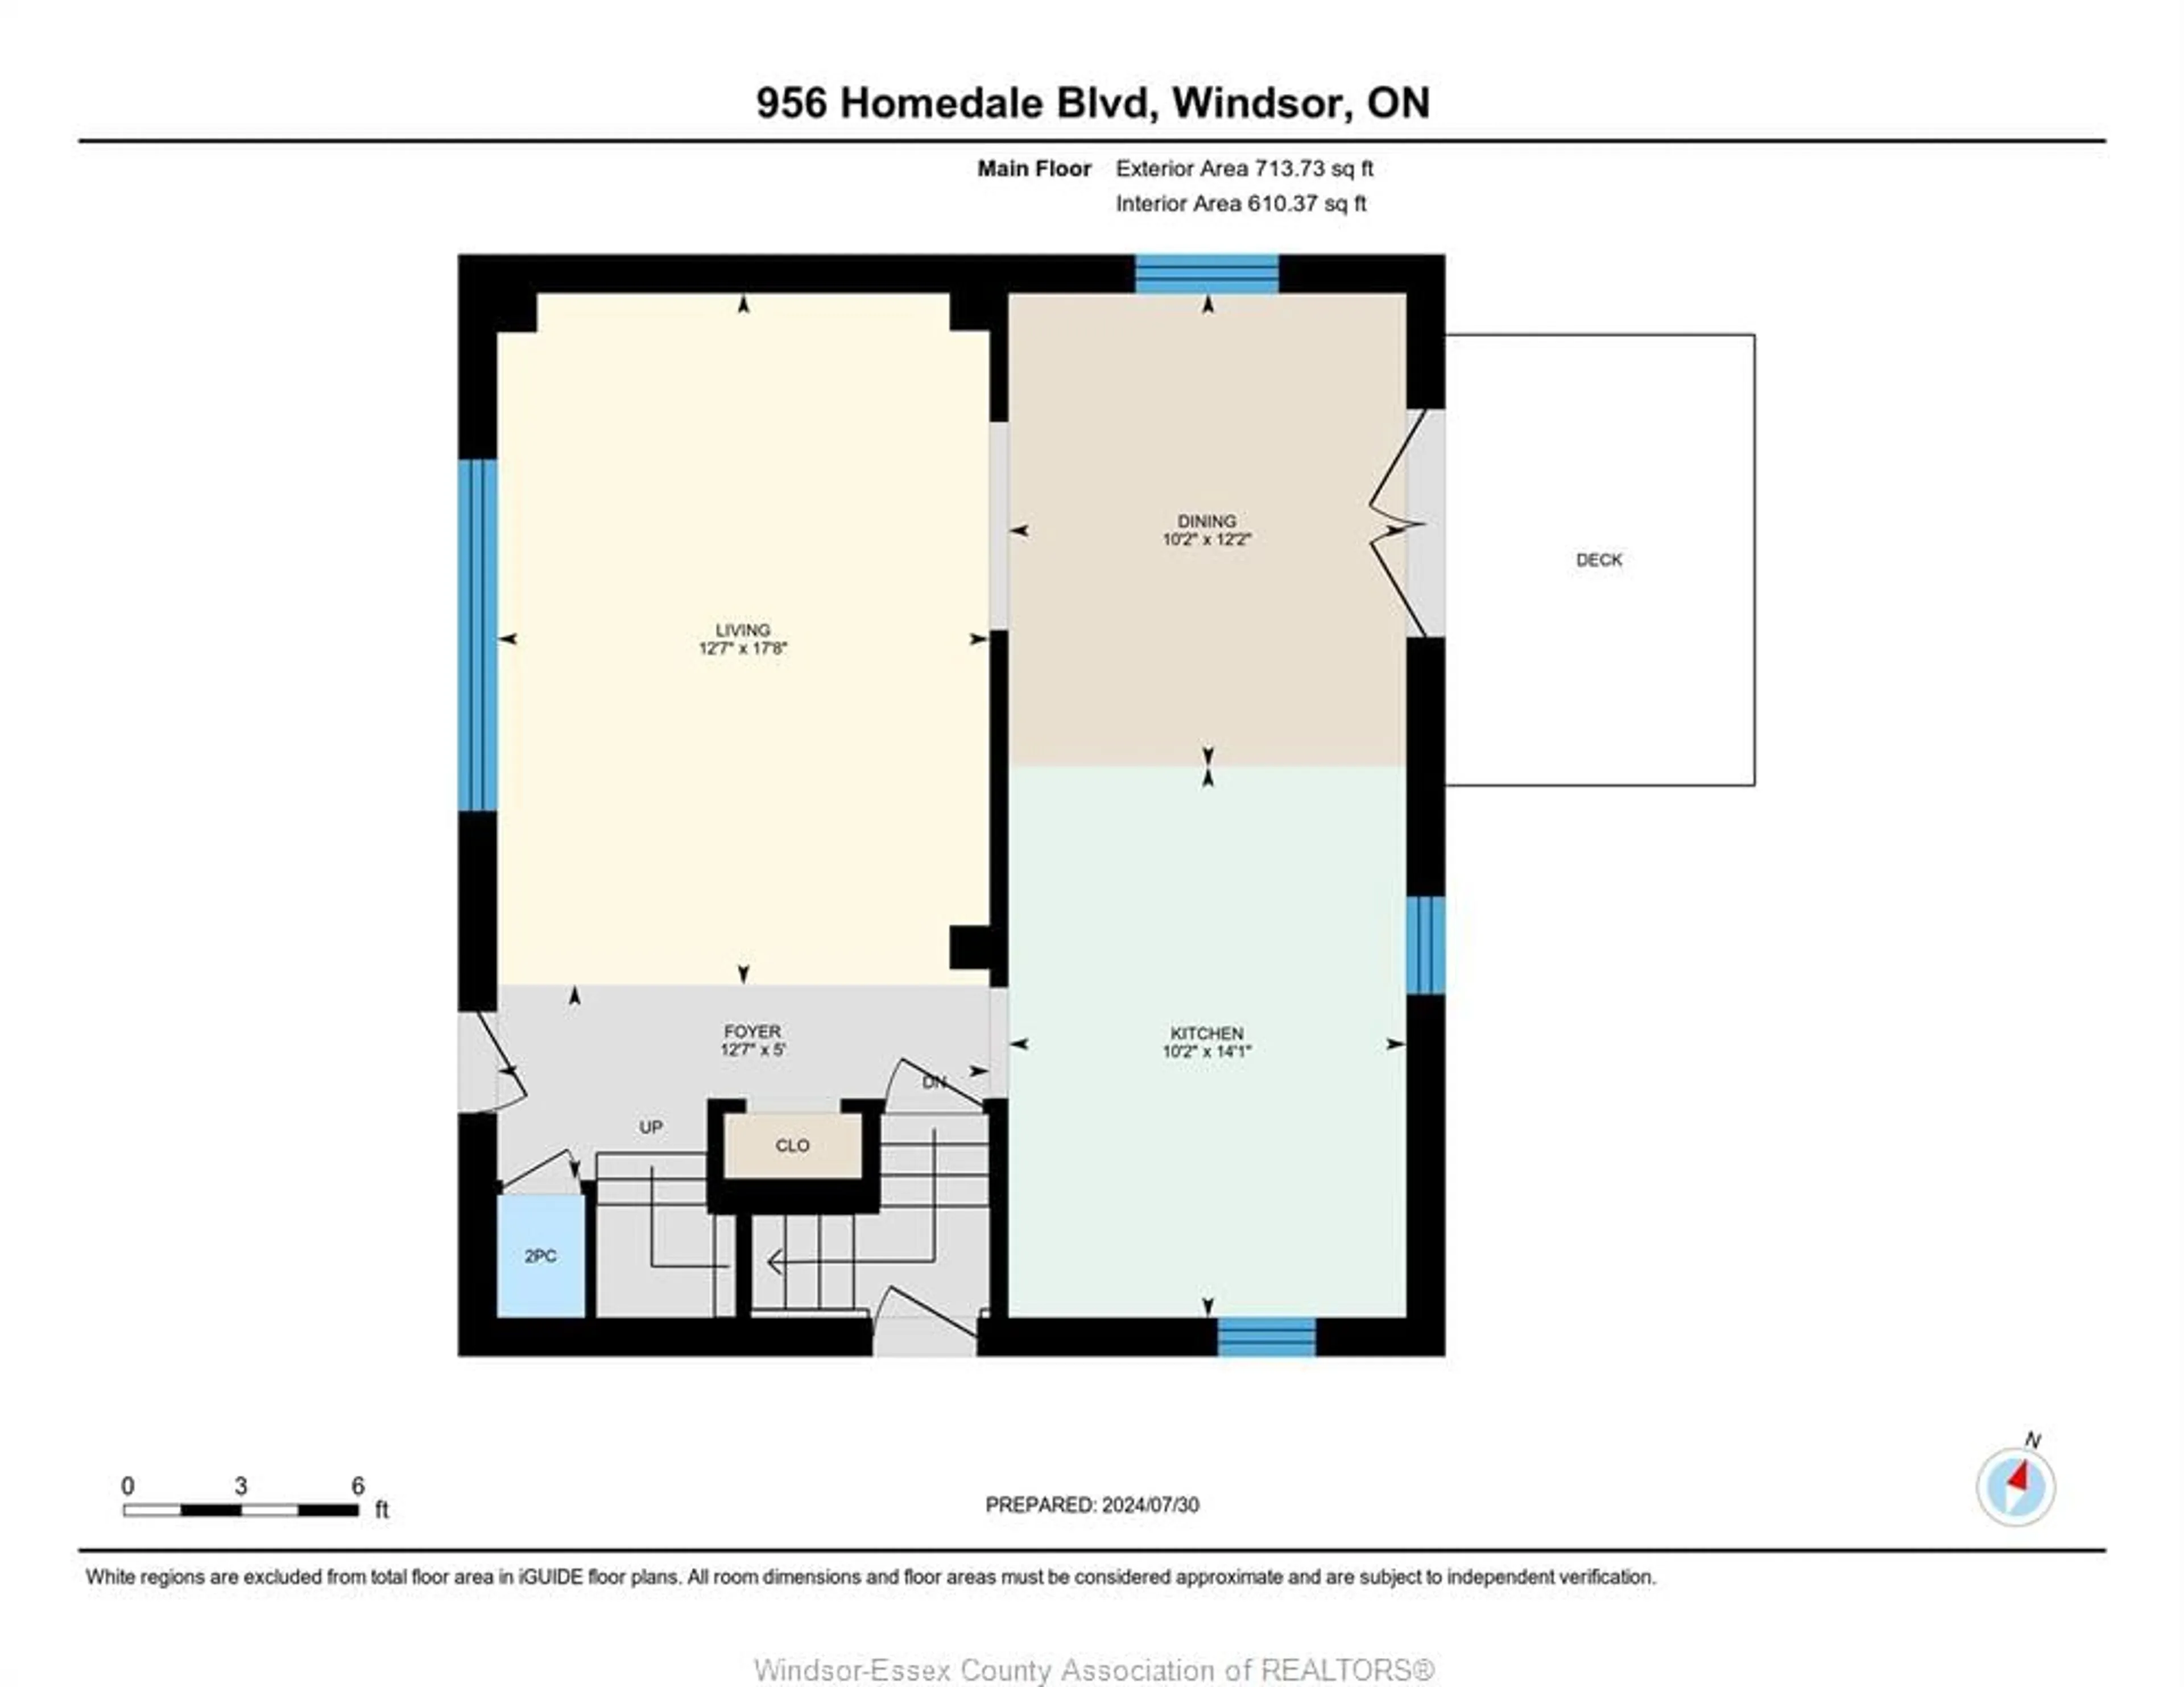 Floor plan for 956 HOMEDALE, Windsor Ontario N8S 2T2